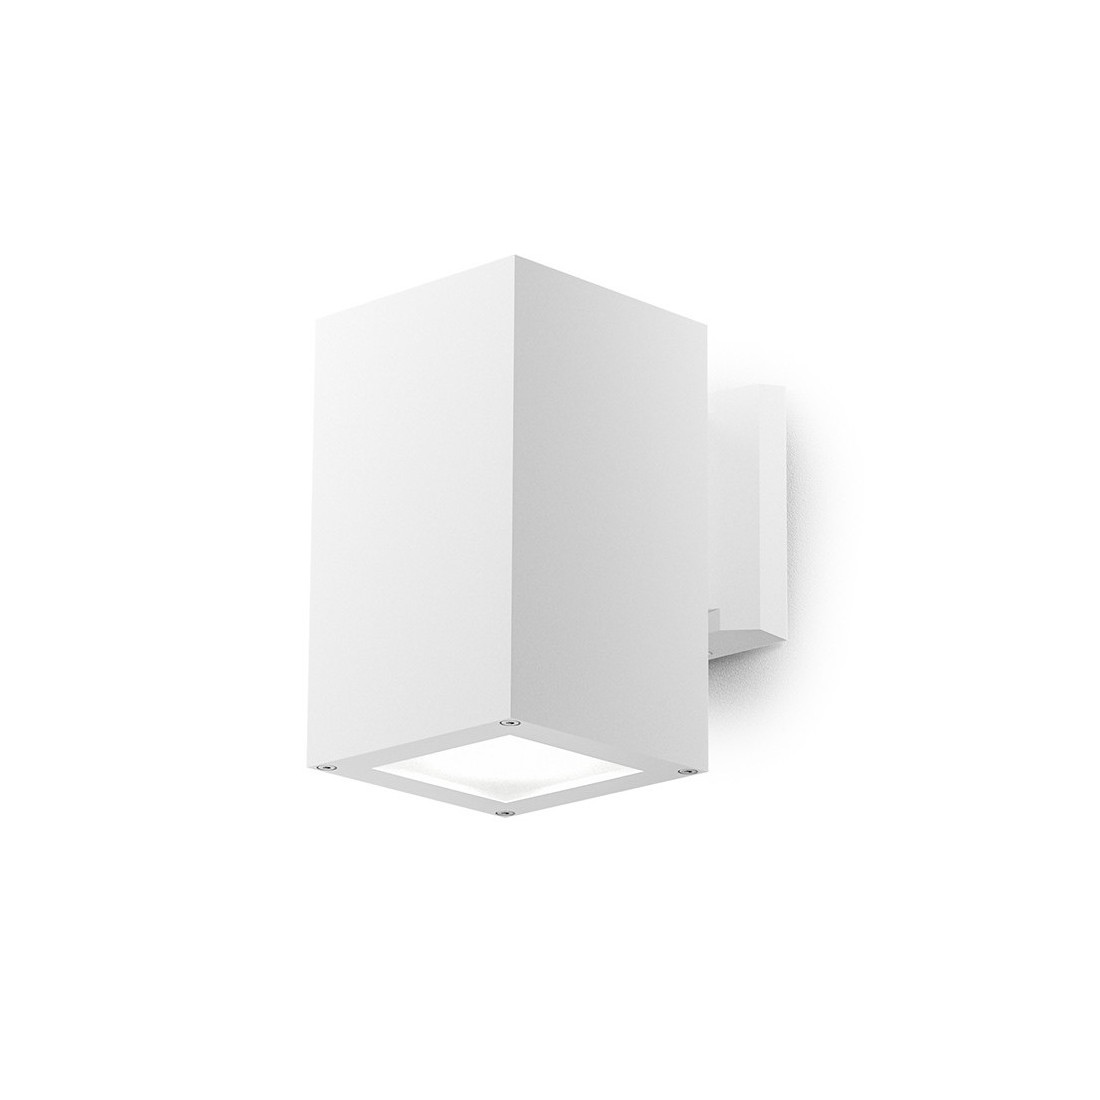 Amon applique E27 quadrato bianco IP65 lampada esterno